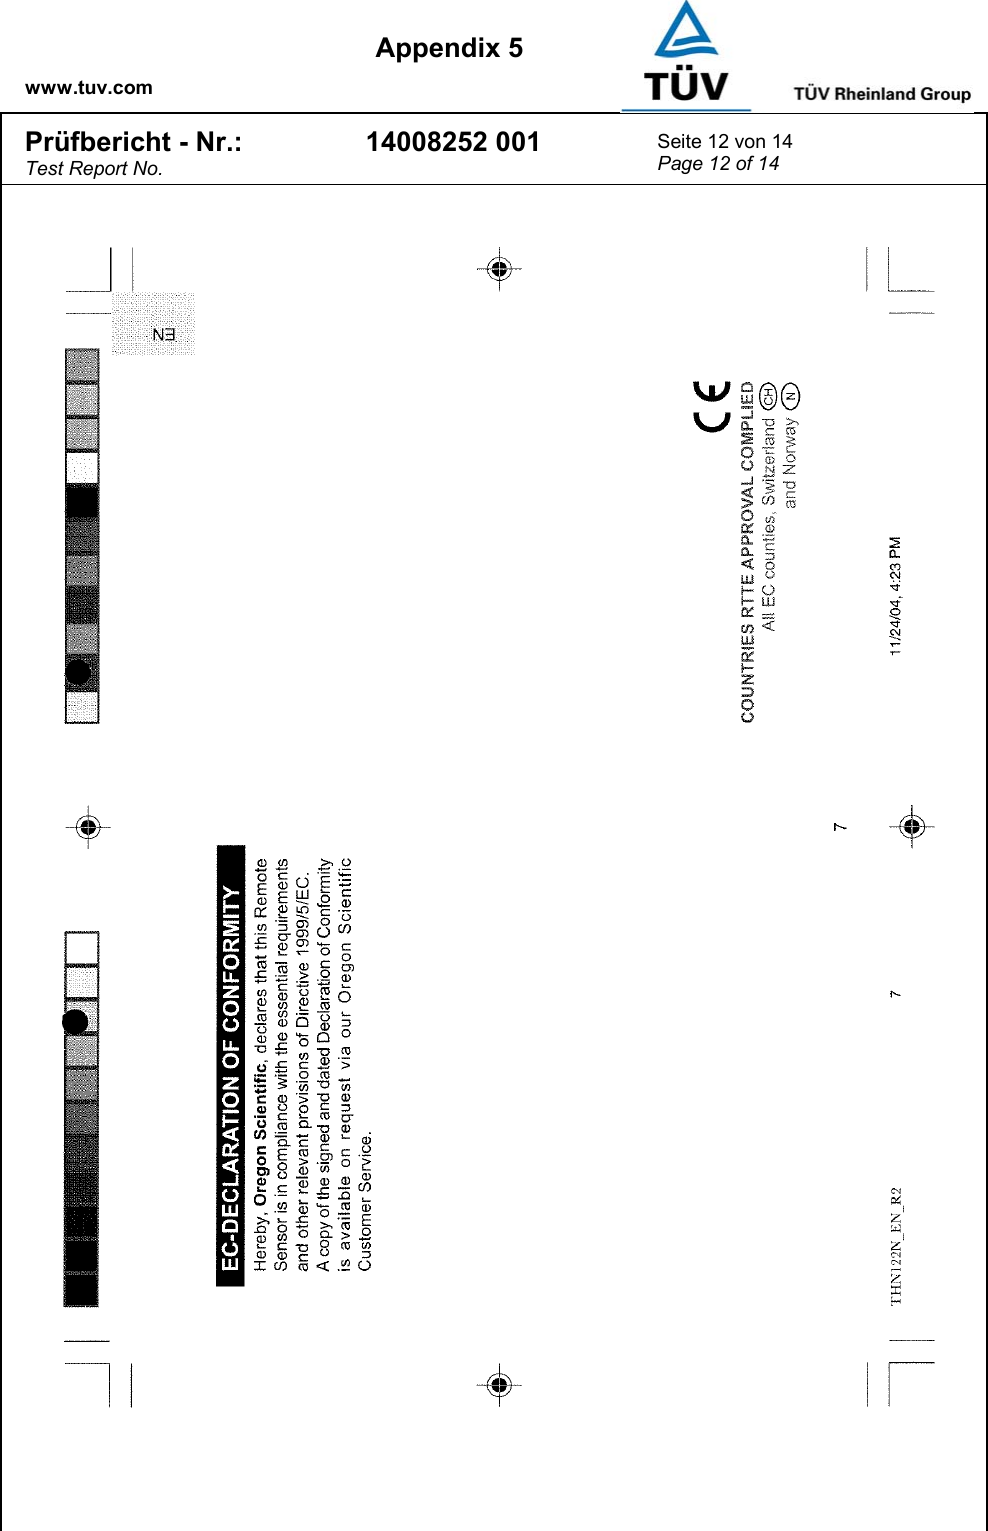    www.tuv.com  Appendix 5 Prüfbericht - Nr.: Test Report No. 14008252 001  Seite 12 von 14 Page 12 of 14   